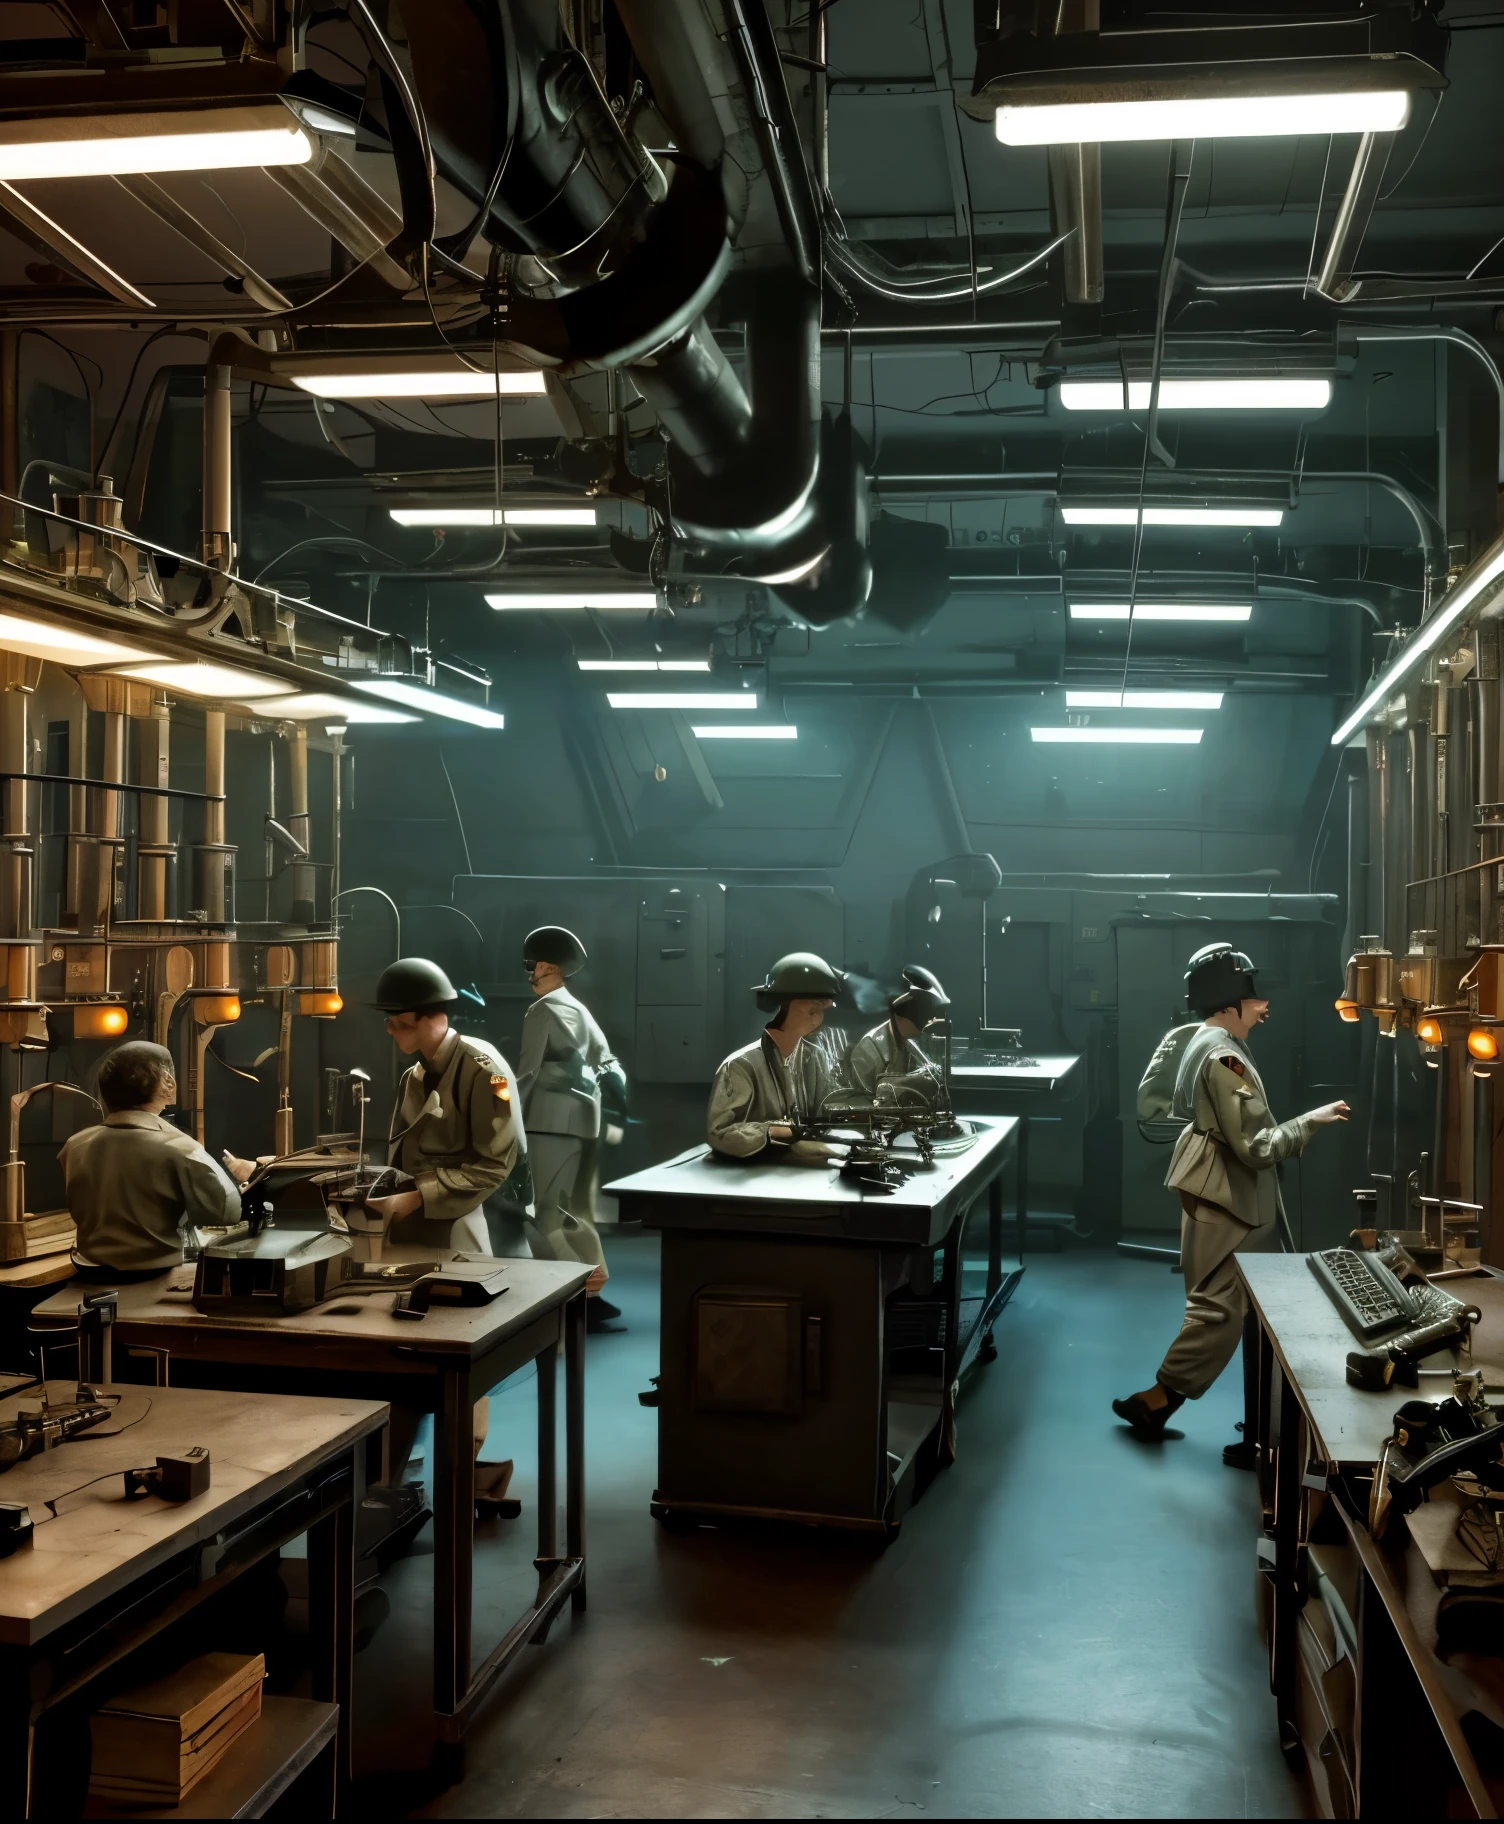  Ретро-научно-фантастическая сцена времен Второй мировой войны с мозгами, выстроенными в ряд на лабораторном столе., в окружении старинного научного оборудования и мерцающих огней